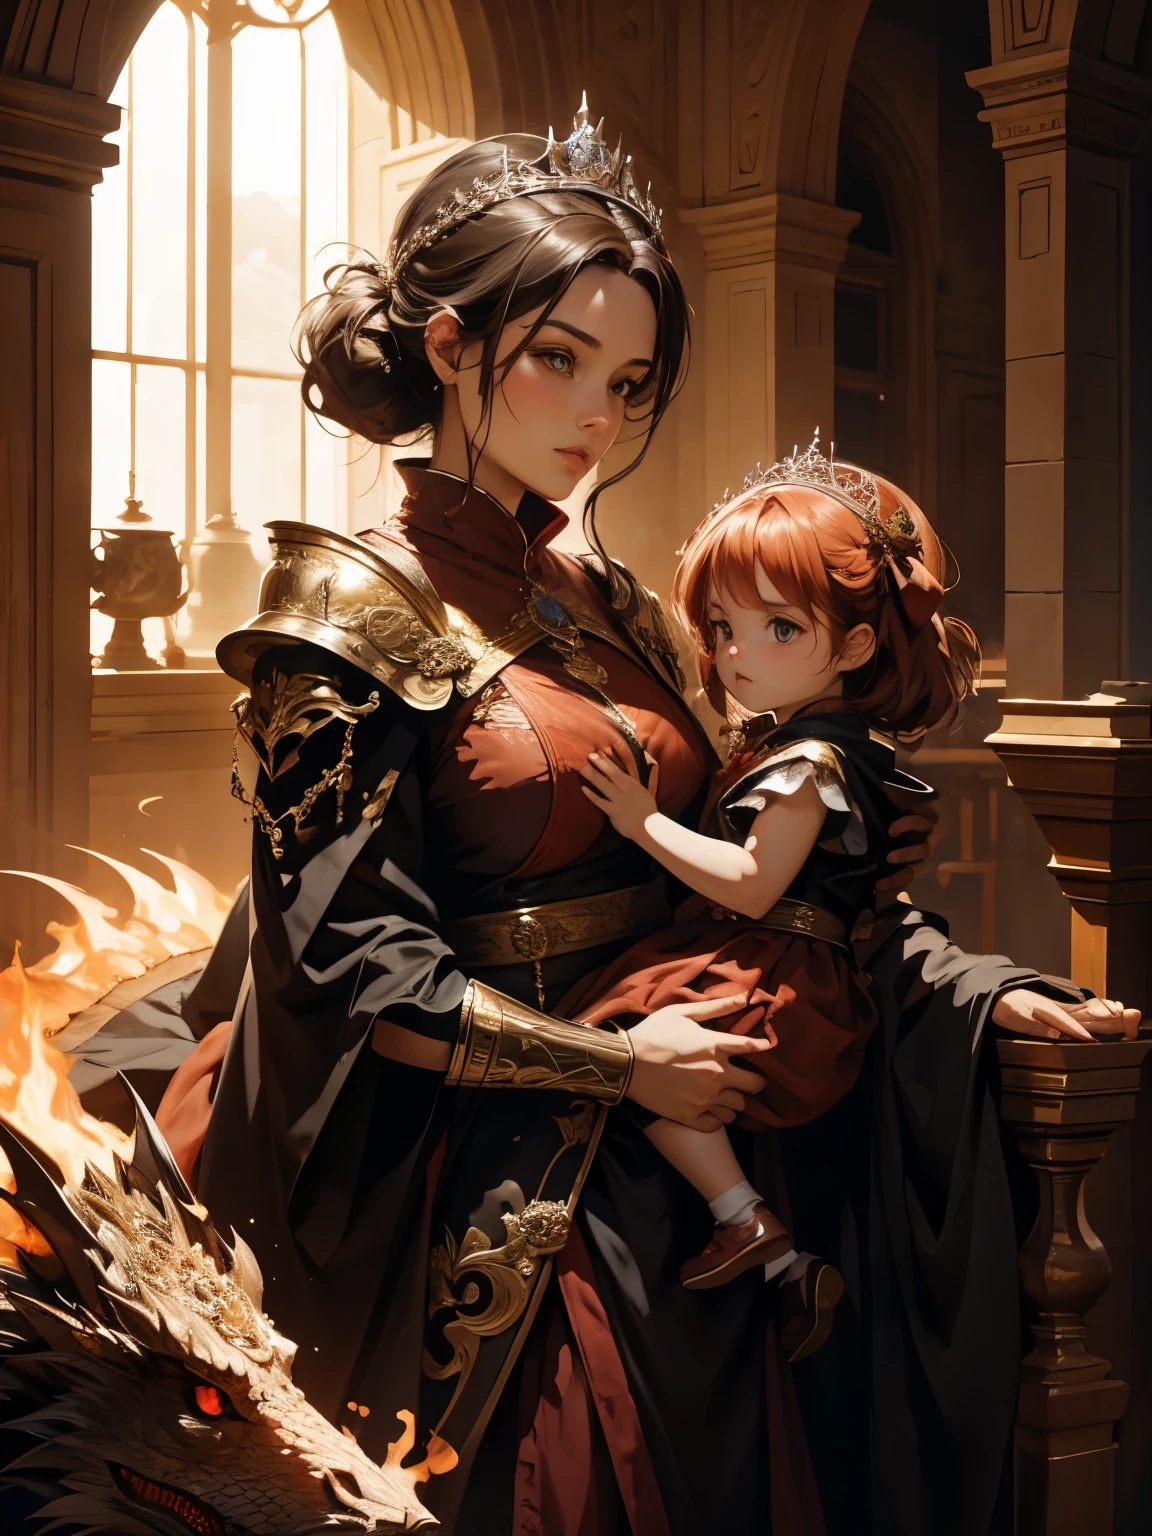 (beste Qualität), (hohe Detailgenauigkeit), die schöne Königin der Drachen mit ihrem beliebtesten Drachen, der ihre Tochter hält, (Feuerrot 1:1), HDR, UHD, 4K, 8K, 3D.